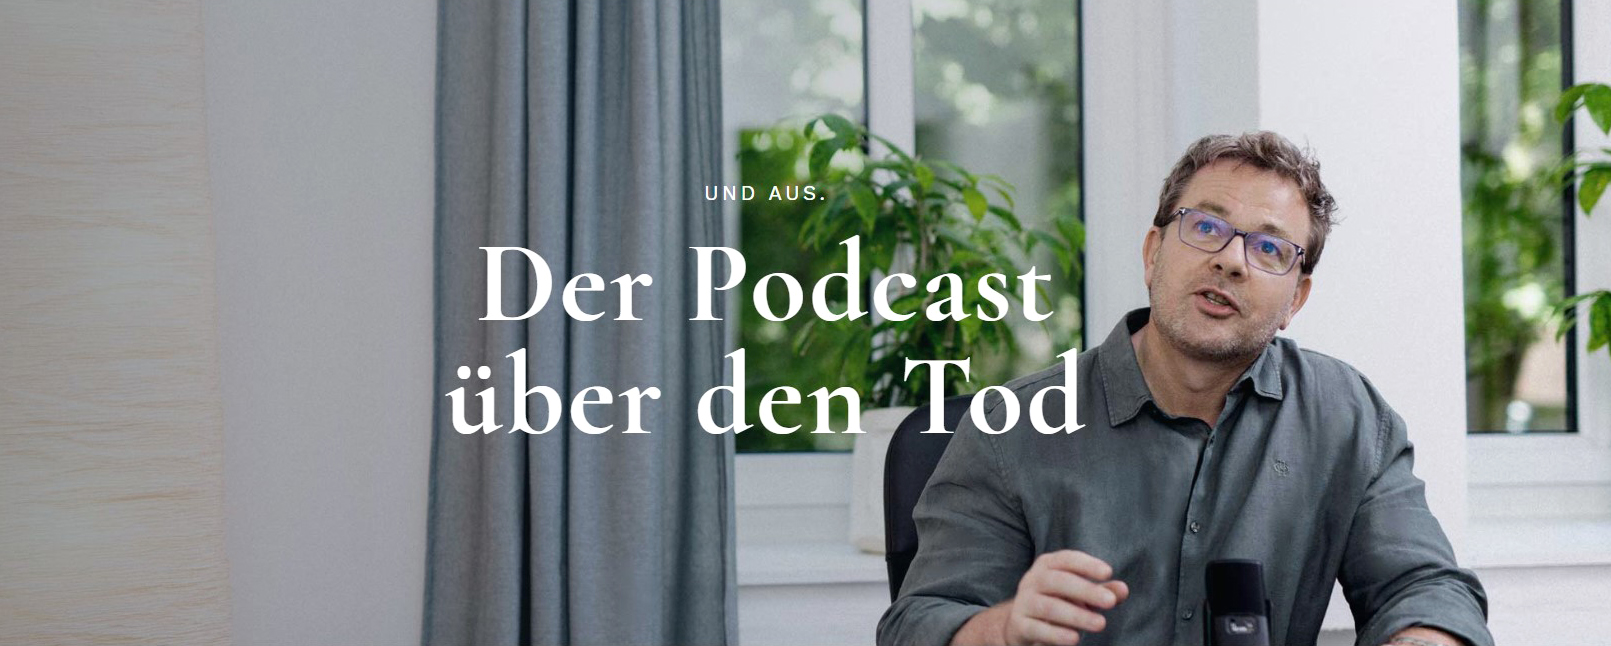 Blog Podcast Ueber Den Tod Titelbild C Werbe Id – Www Werbe Id At